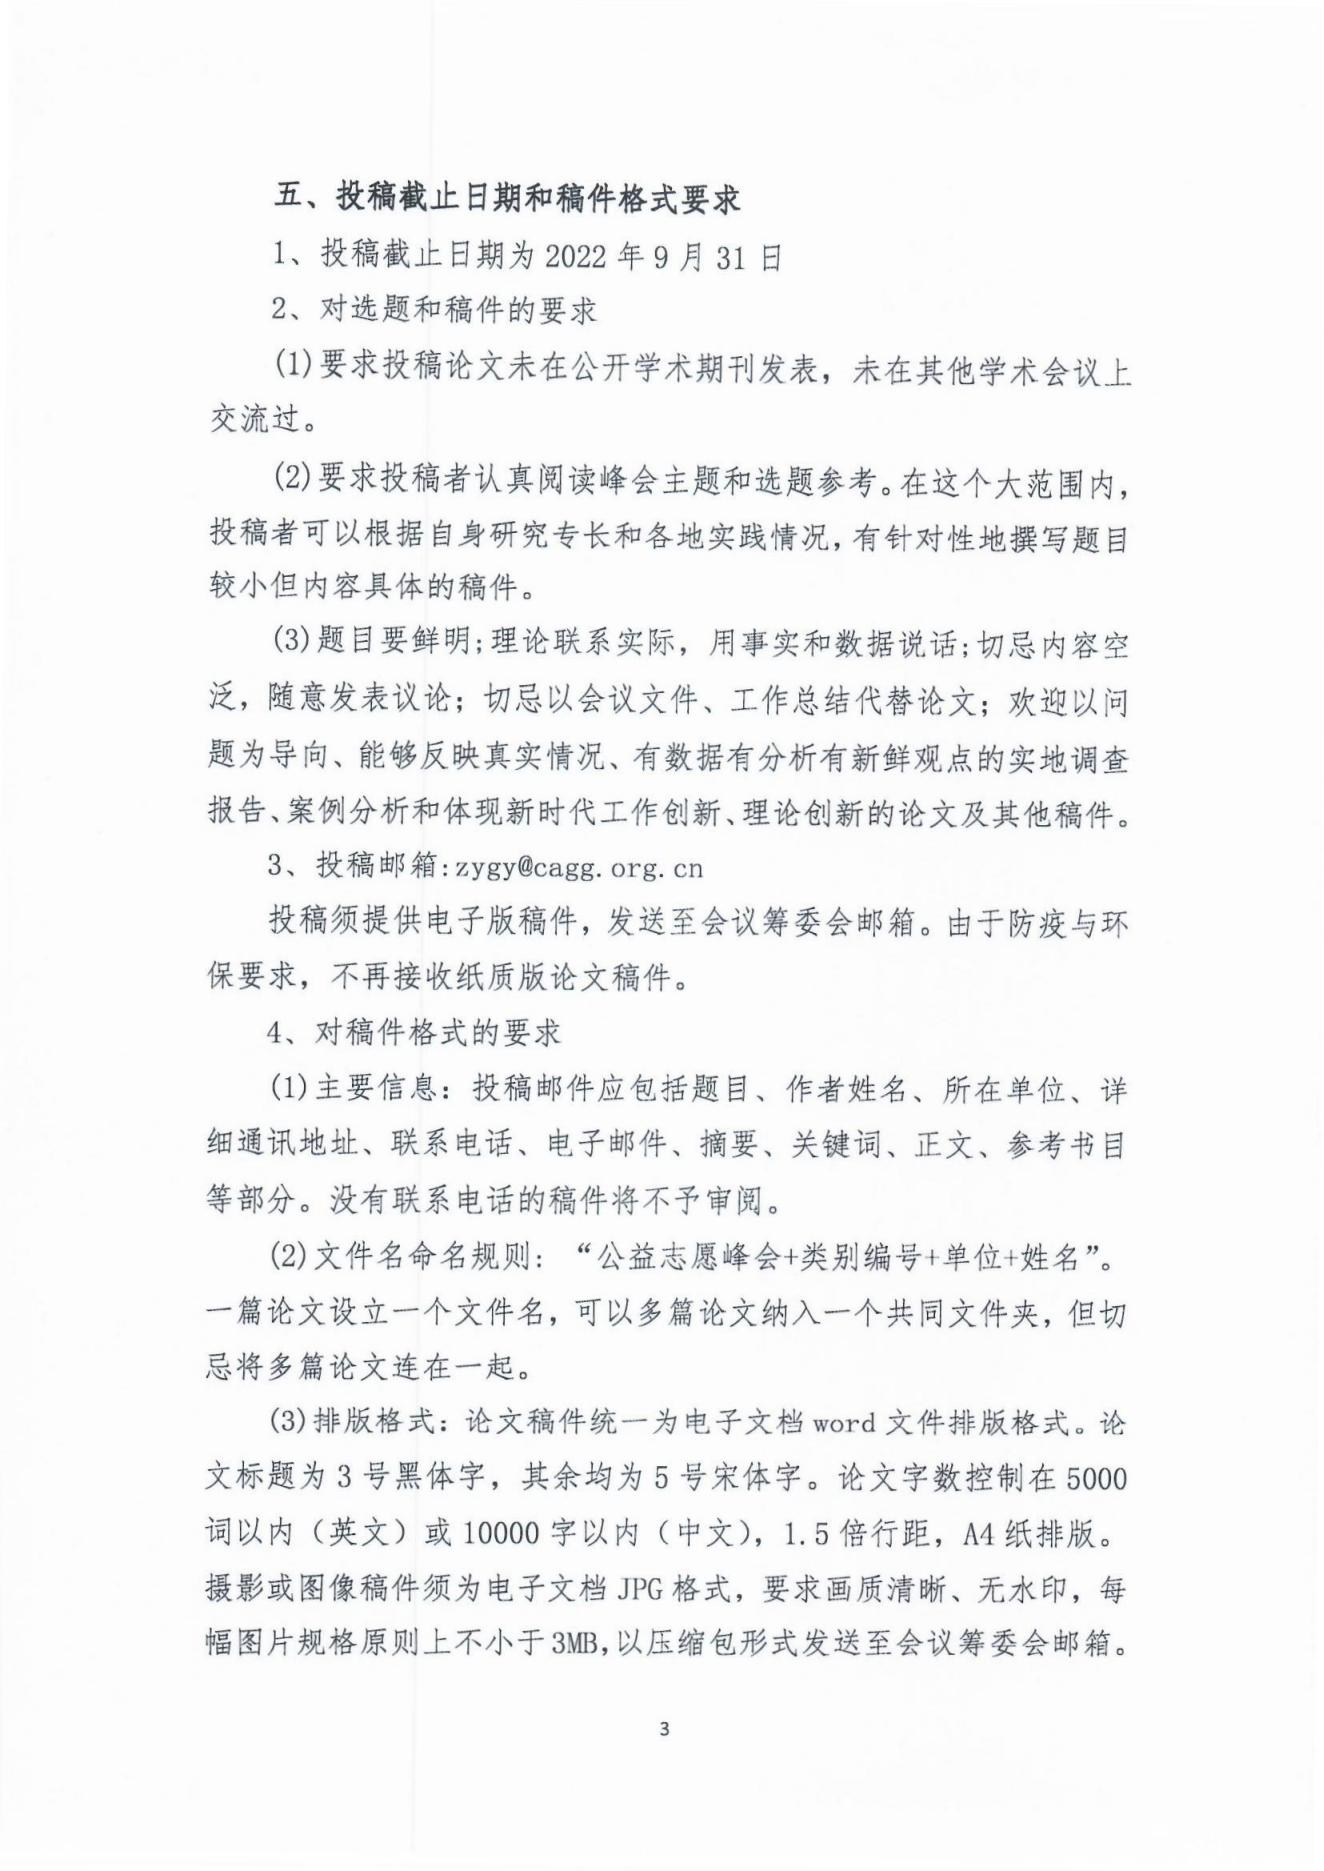 2022年首届中国老龄志愿与公益服务高峰论坛论文征集通知(1)_02.jpg